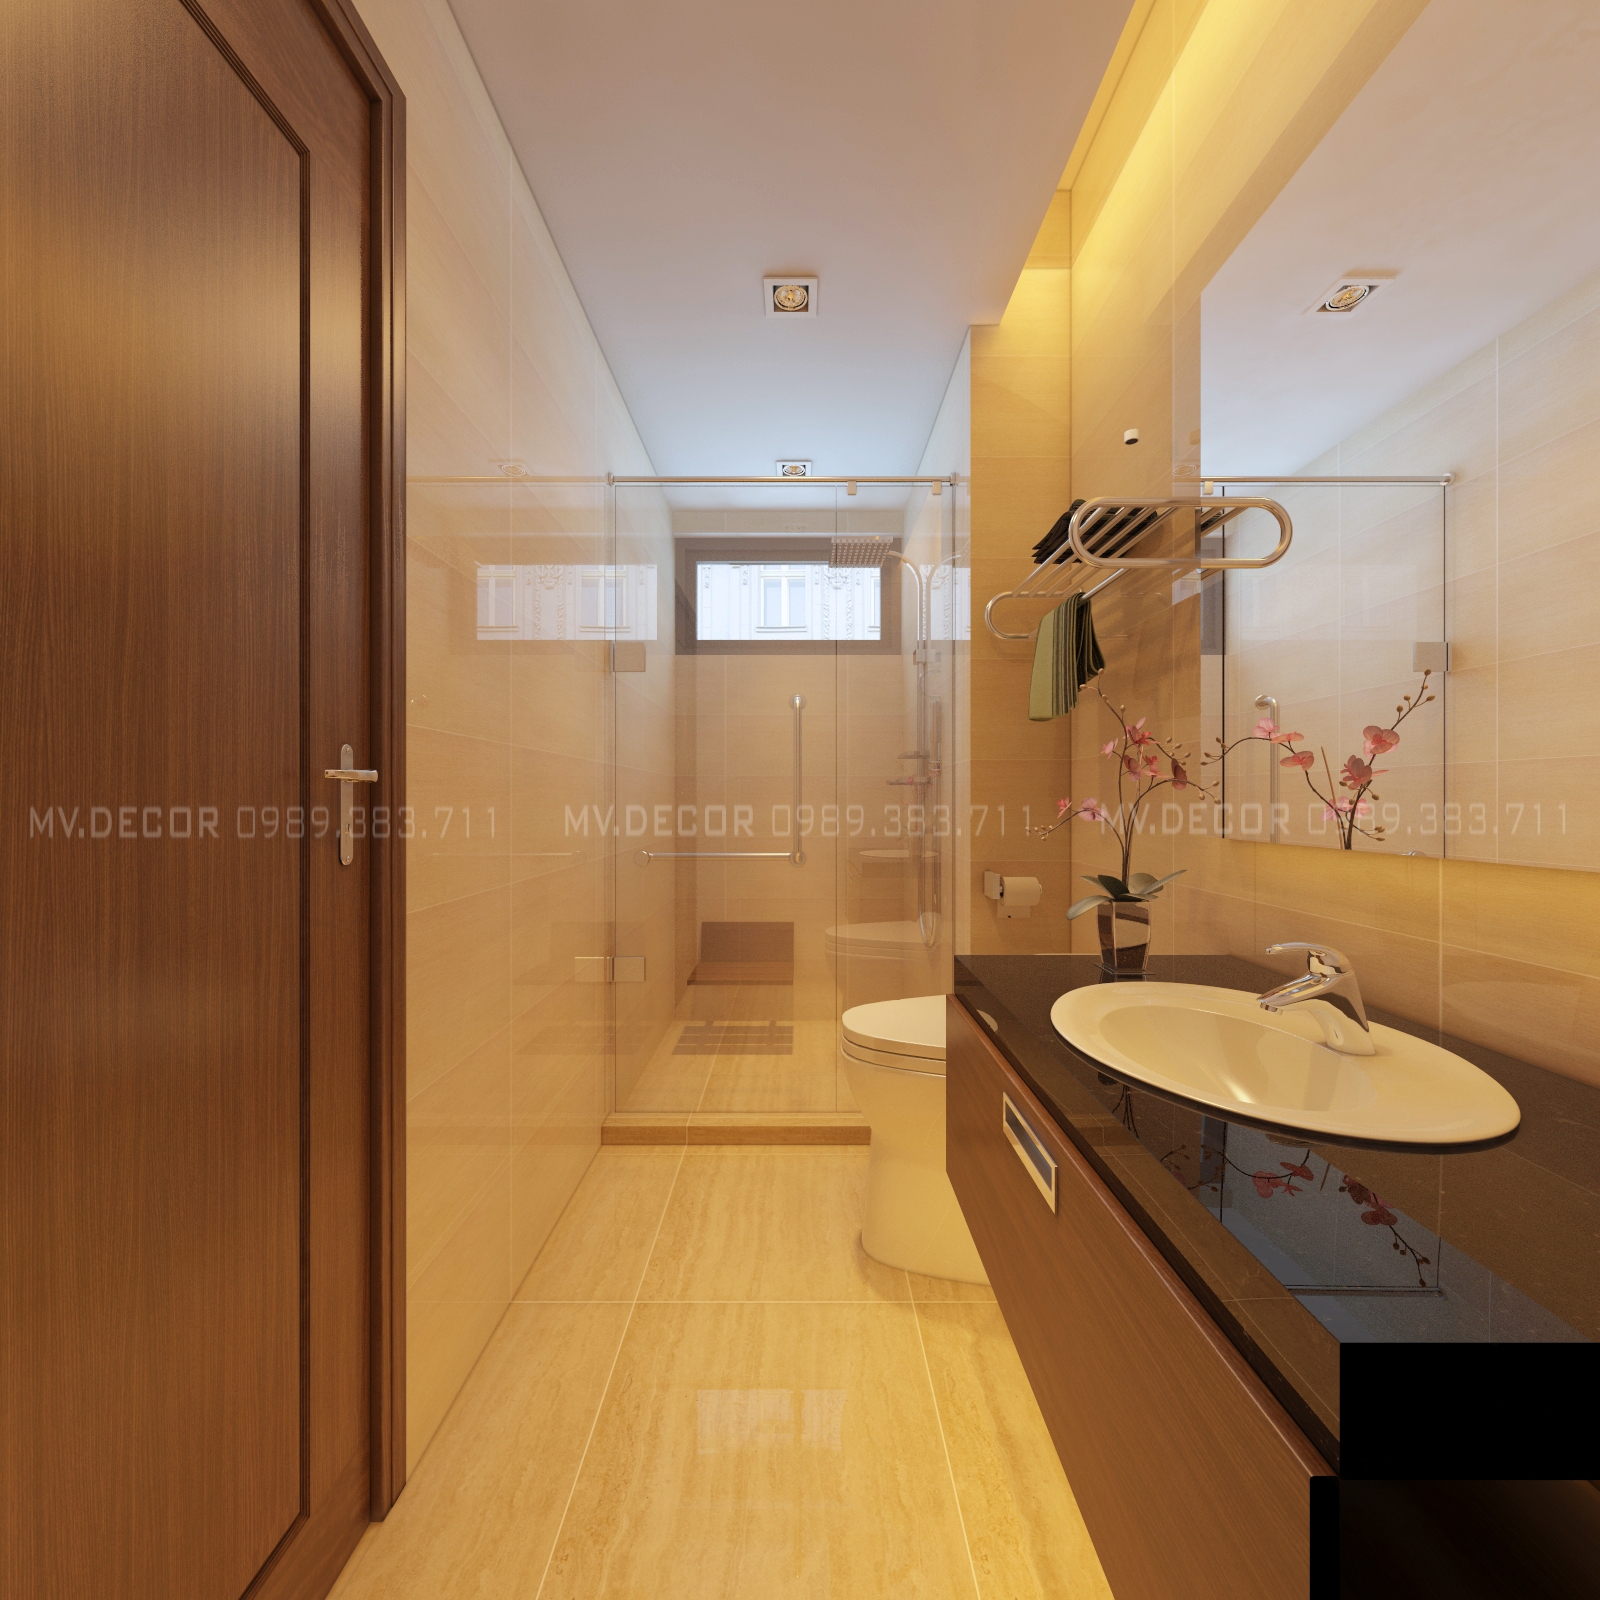 thiết kế nội thất chung cư tại Hà Nội nhà mẫu tràng an complex 19 1550071931